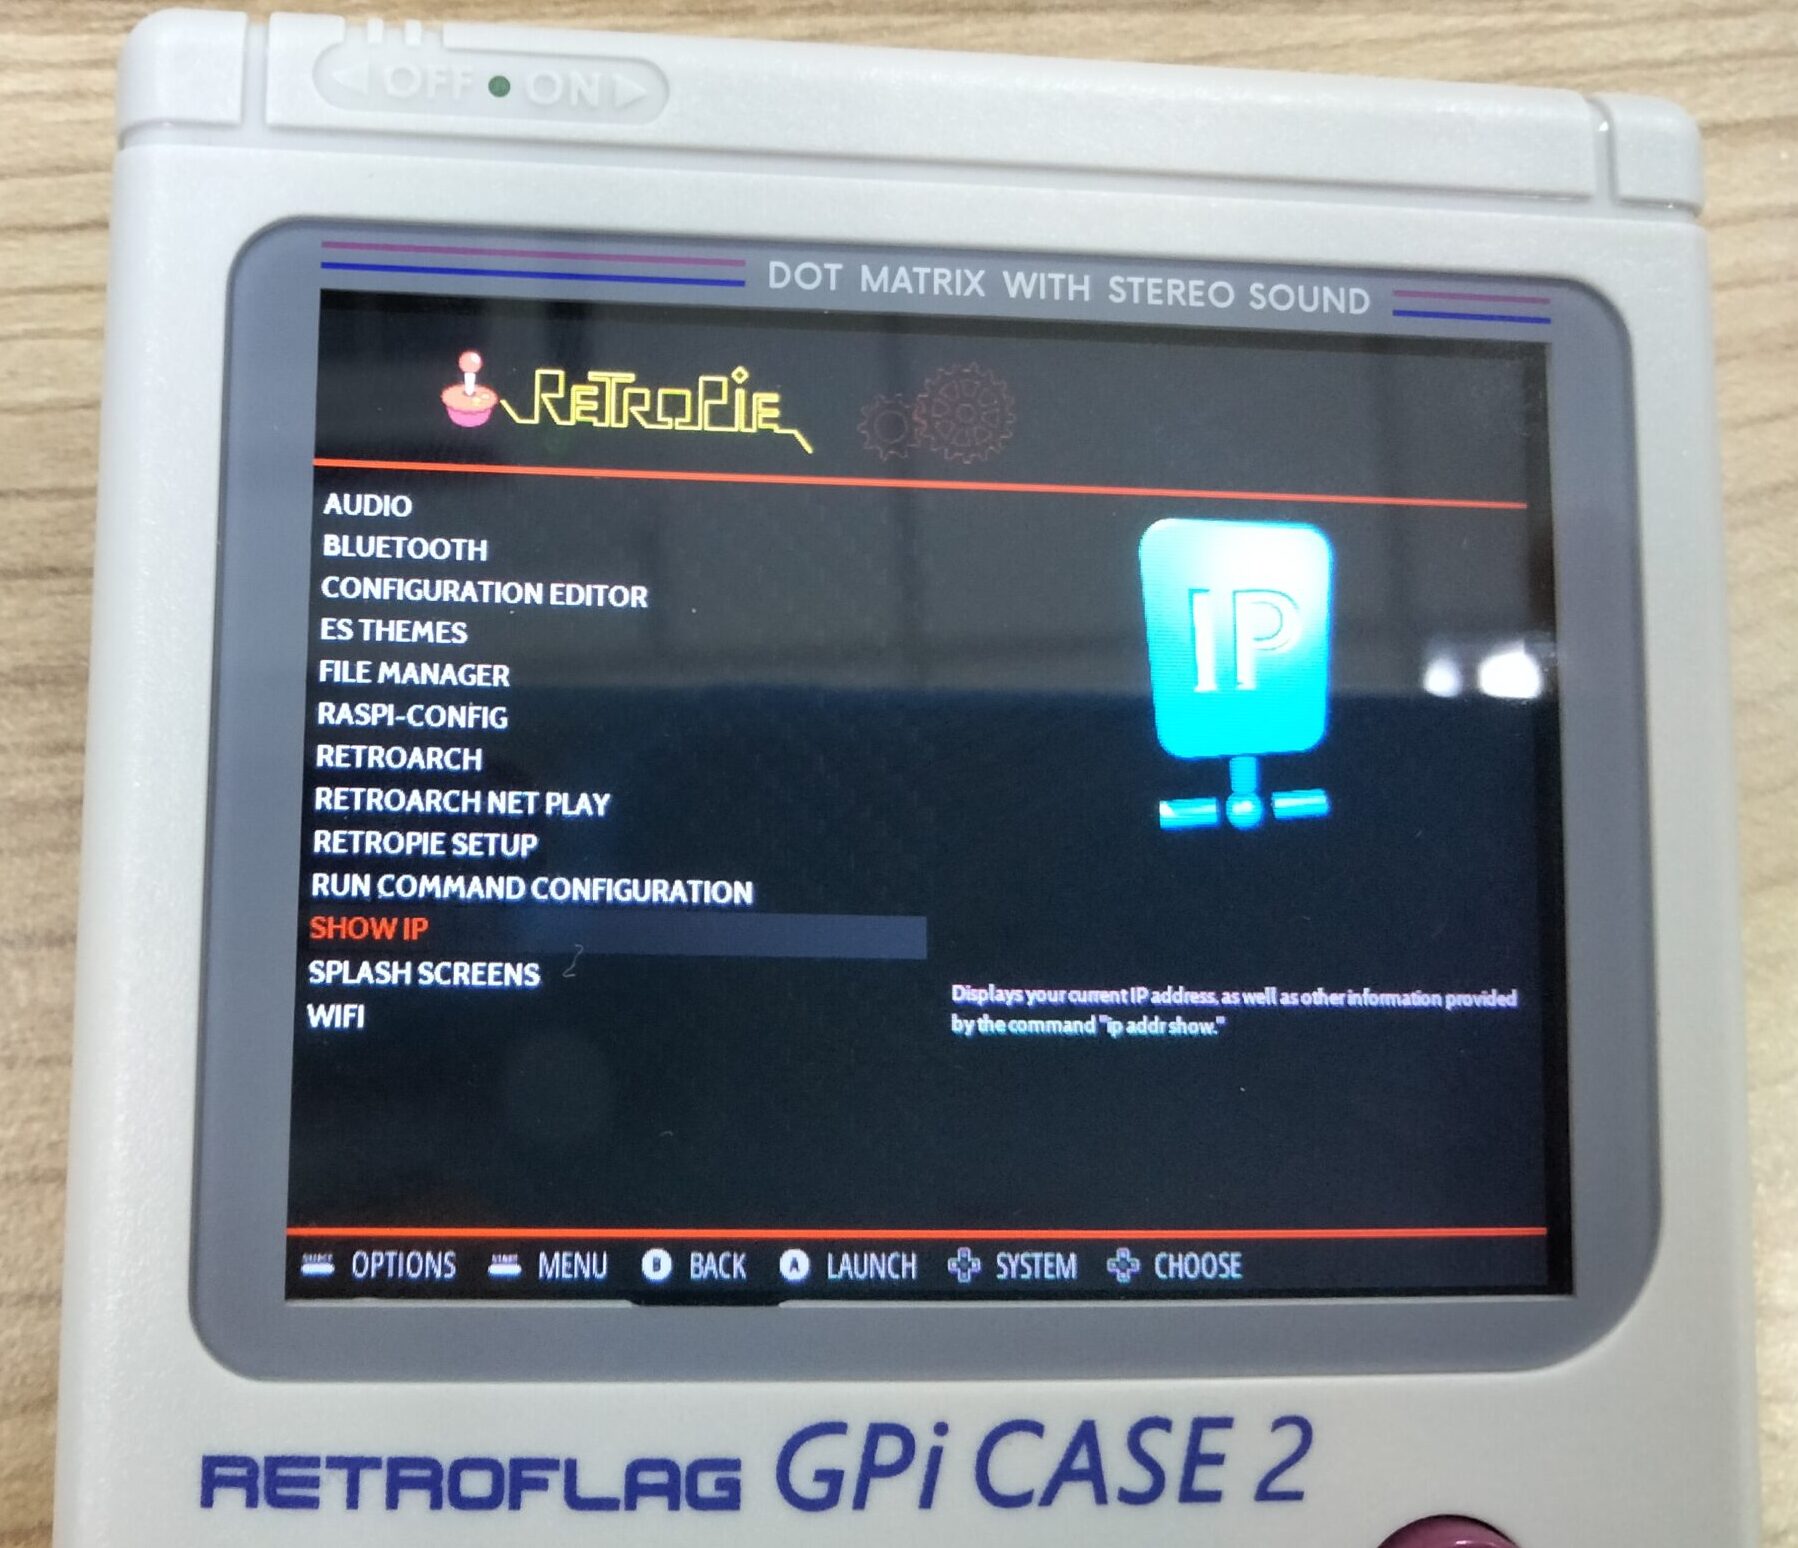 How to Install Retropie on a Retroflag GPi Case & GPi Case 2 